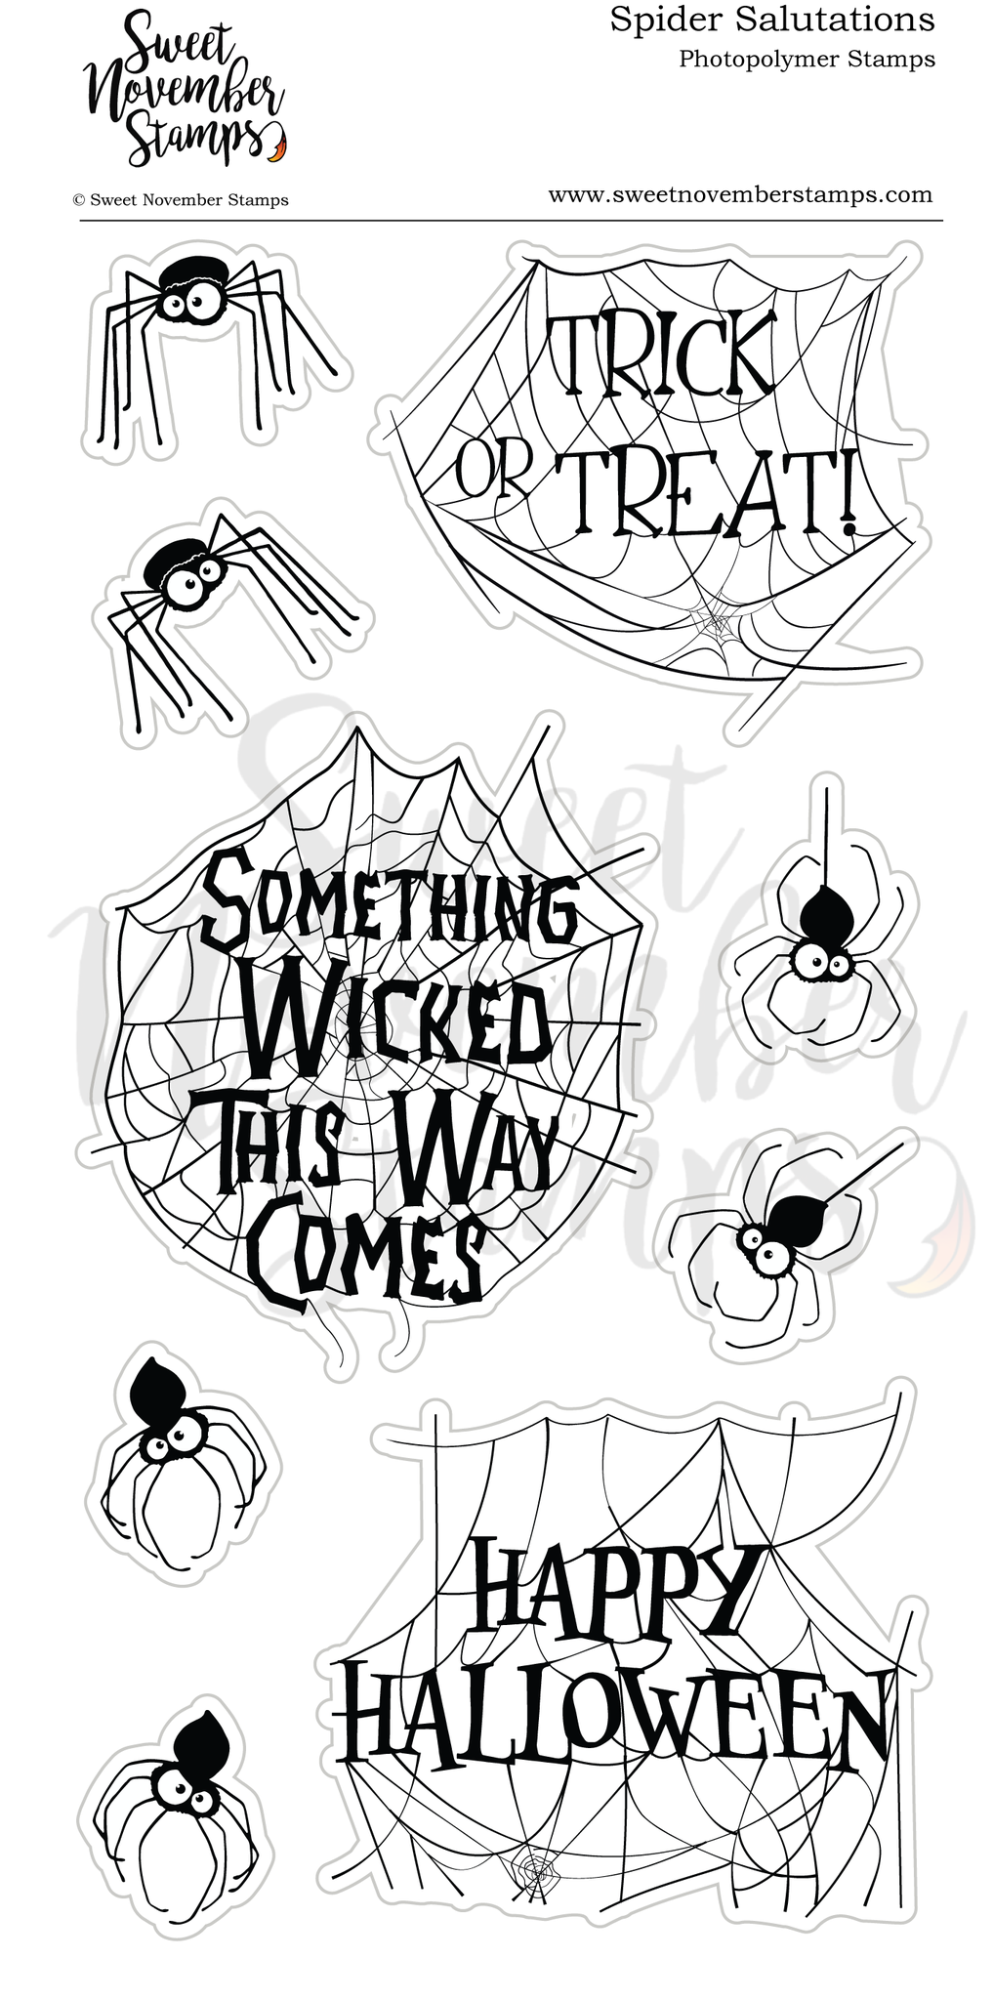 ****NEW**** Sweet November - Spider Salutations Clear stamp set